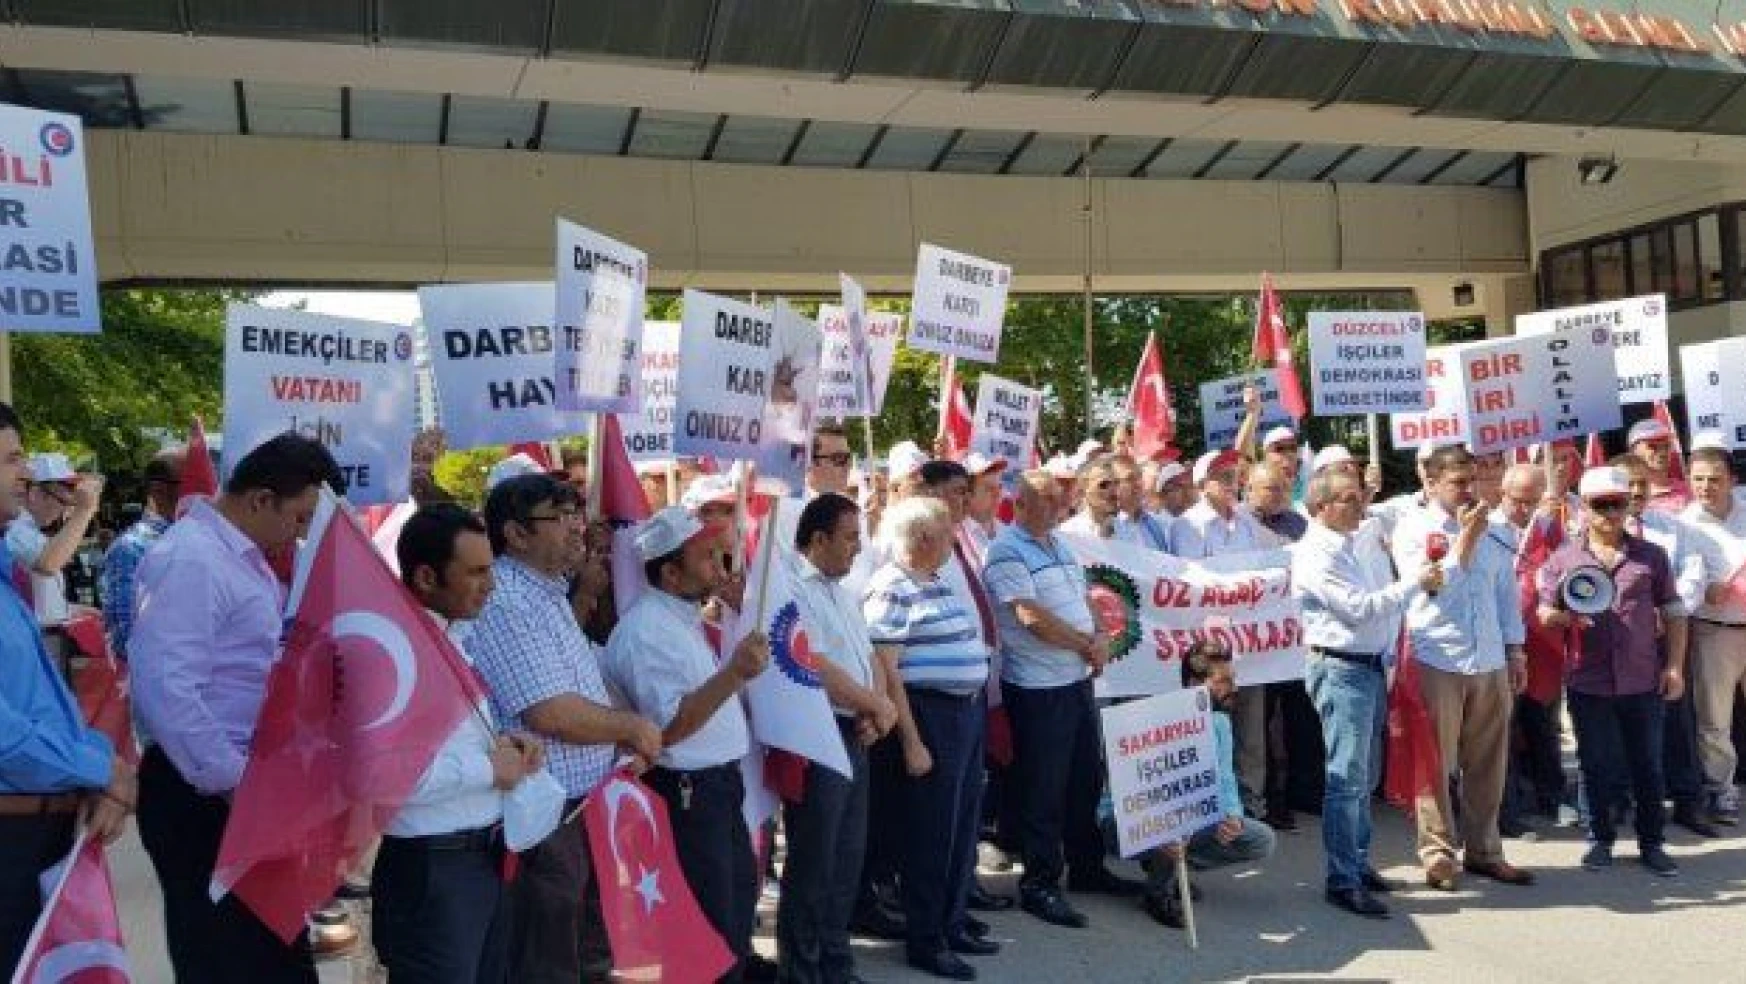 İşçilerden TRT önünde darbe protestosu